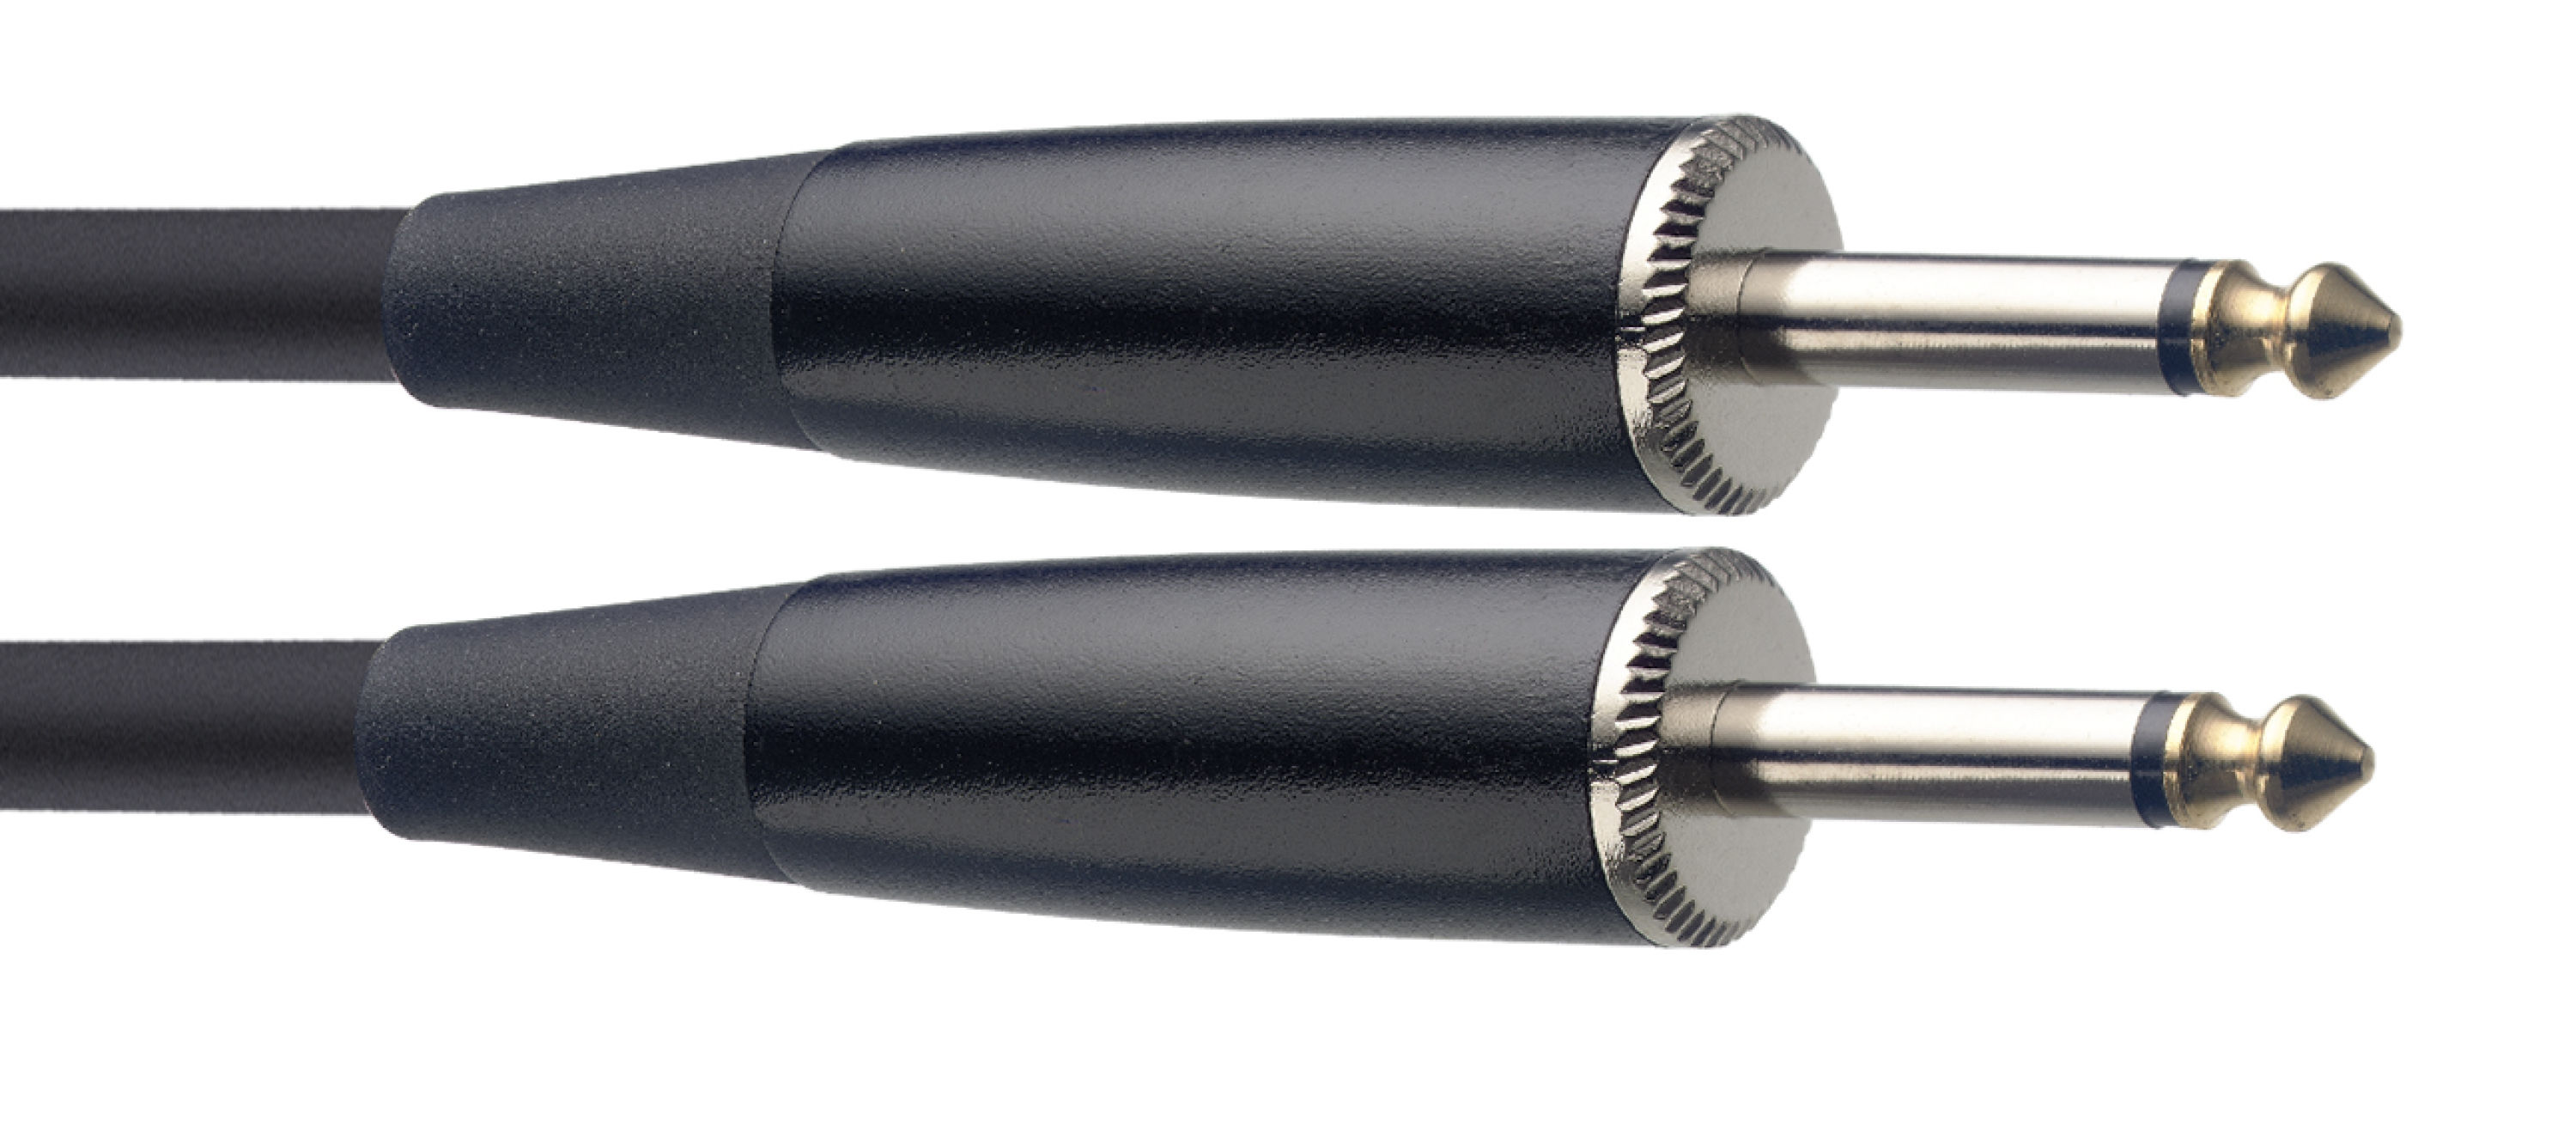 Stagg SSP1,5PP15, reproduktorový kabel JACK/JACK, 2x 1,5mm, 1,5m